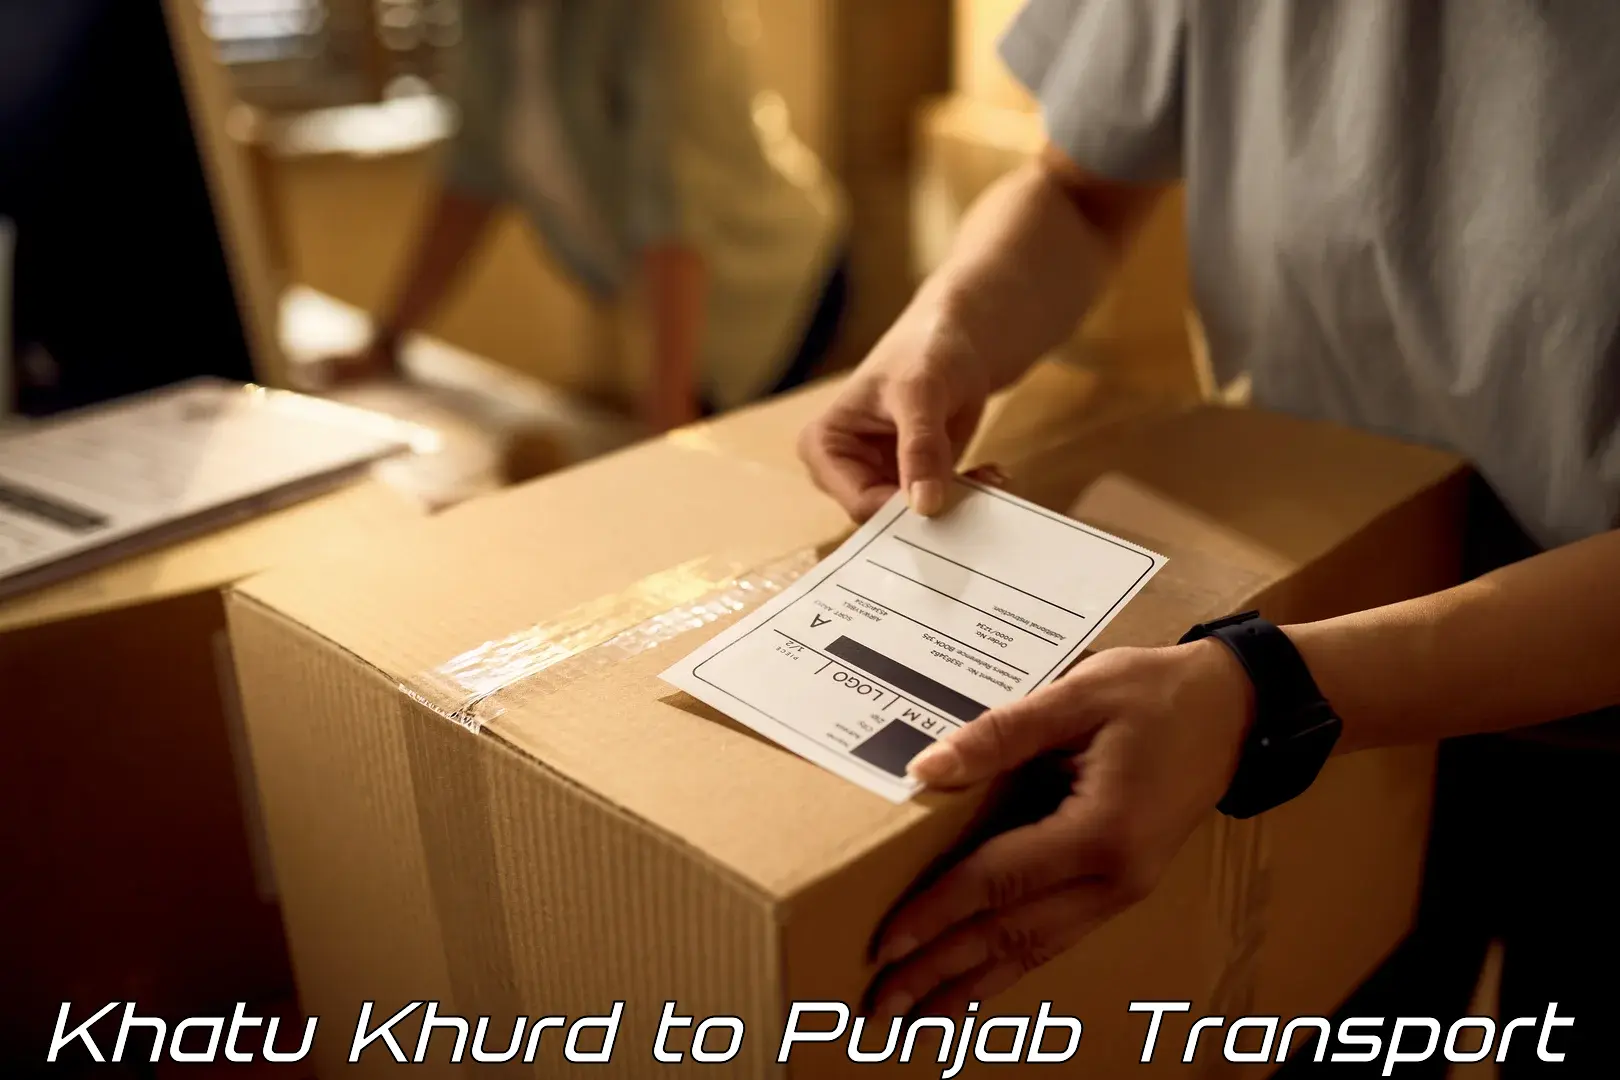 Transport shared services Khatu Khurd to Malerkotla